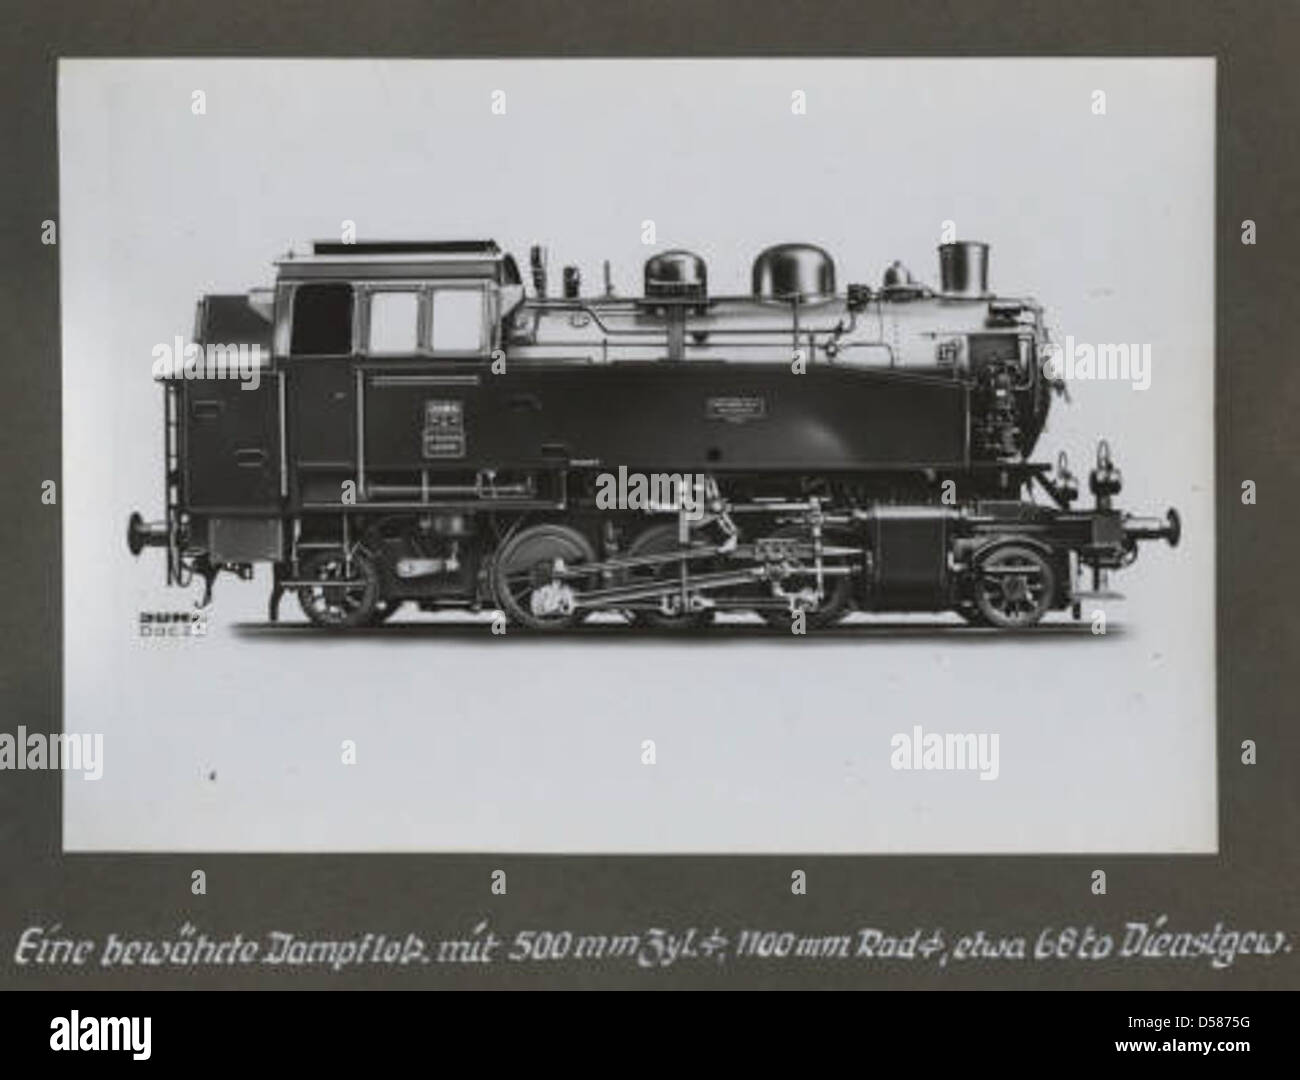 [Eine bewahrte Dampflokomotive] Stock Photo